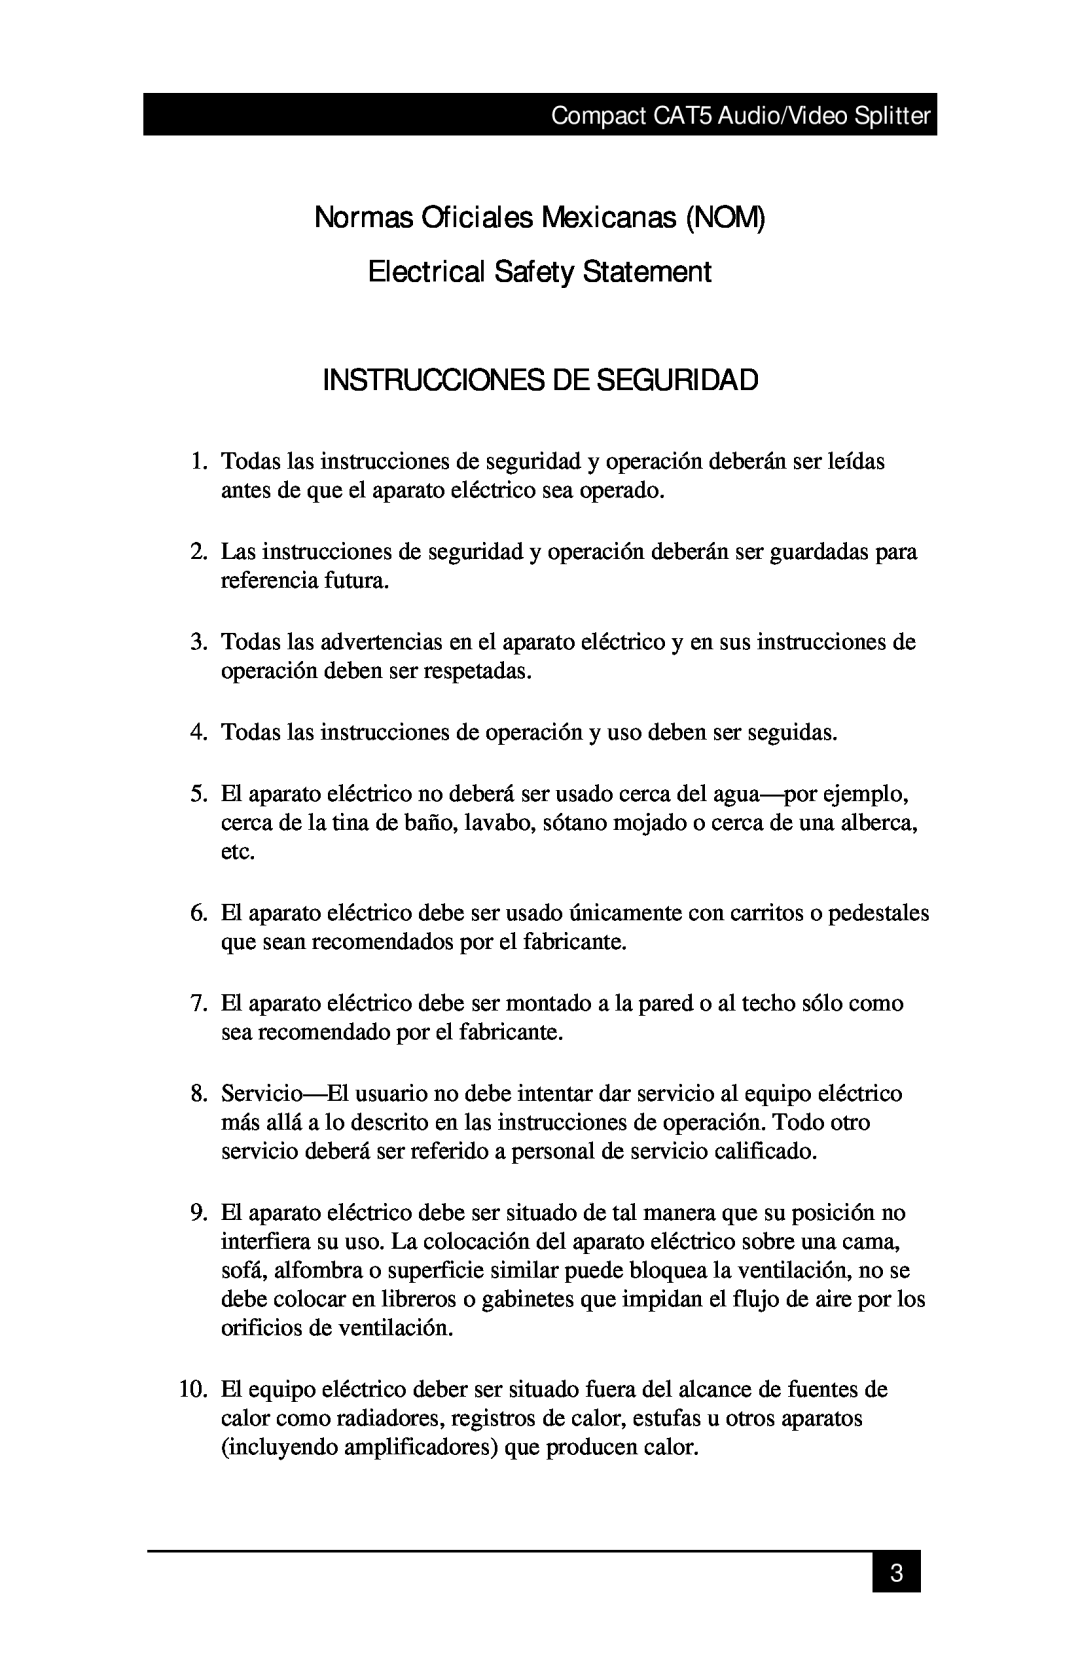 Black Box AC154A-2 manual Normas Oficiales Mexicanas NOM Electrical Safety Statement, Instrucciones De Seguridad 